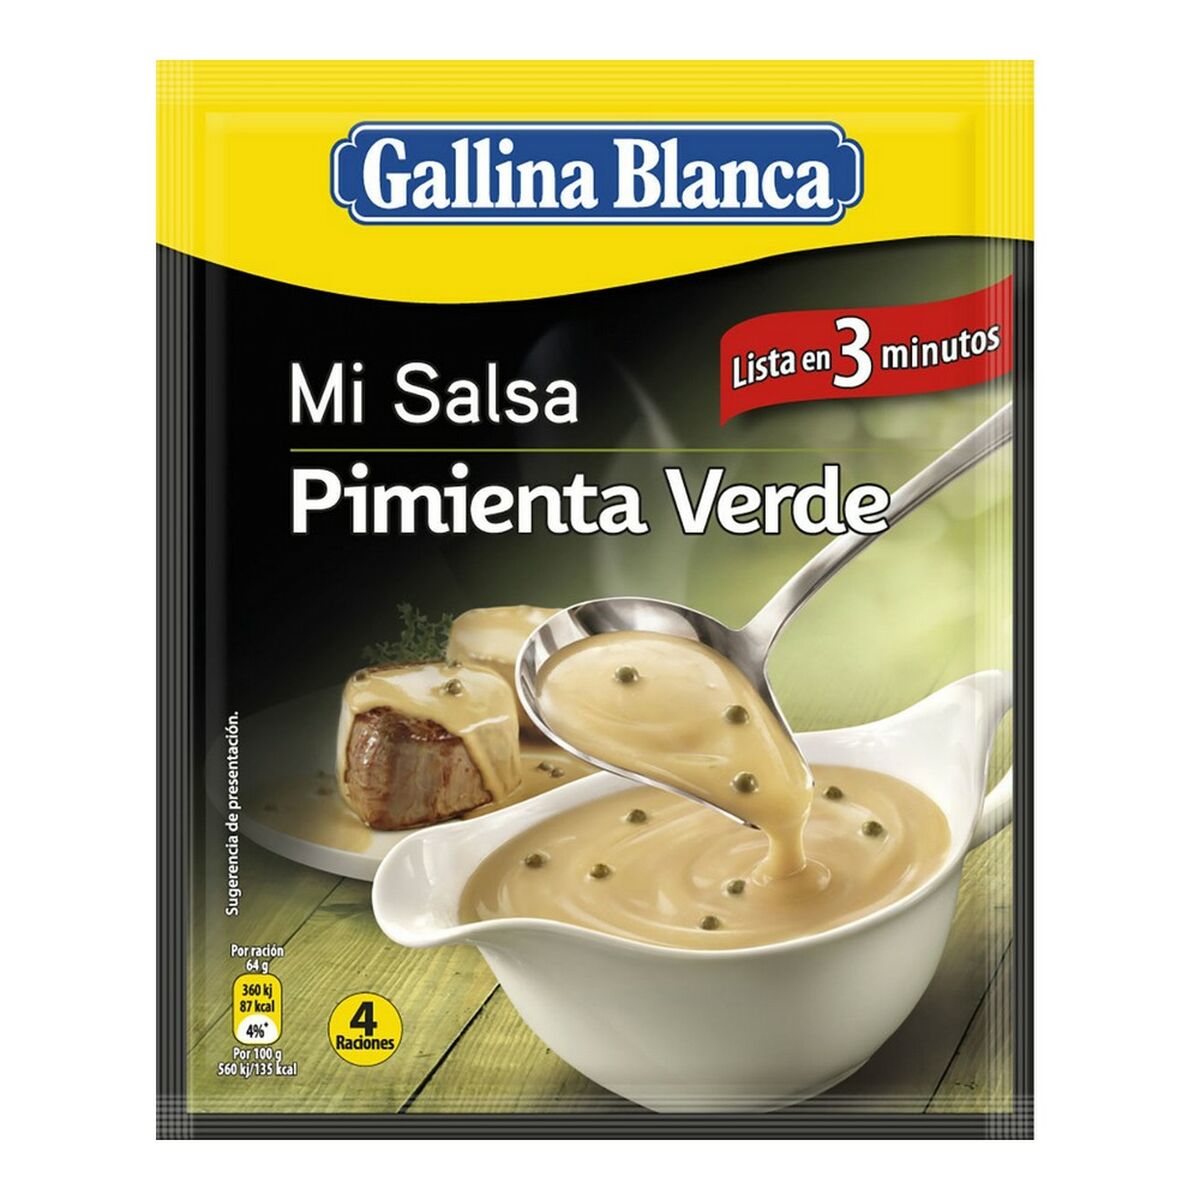 Green Pepper Sauce Gallina Blanca (50 g)